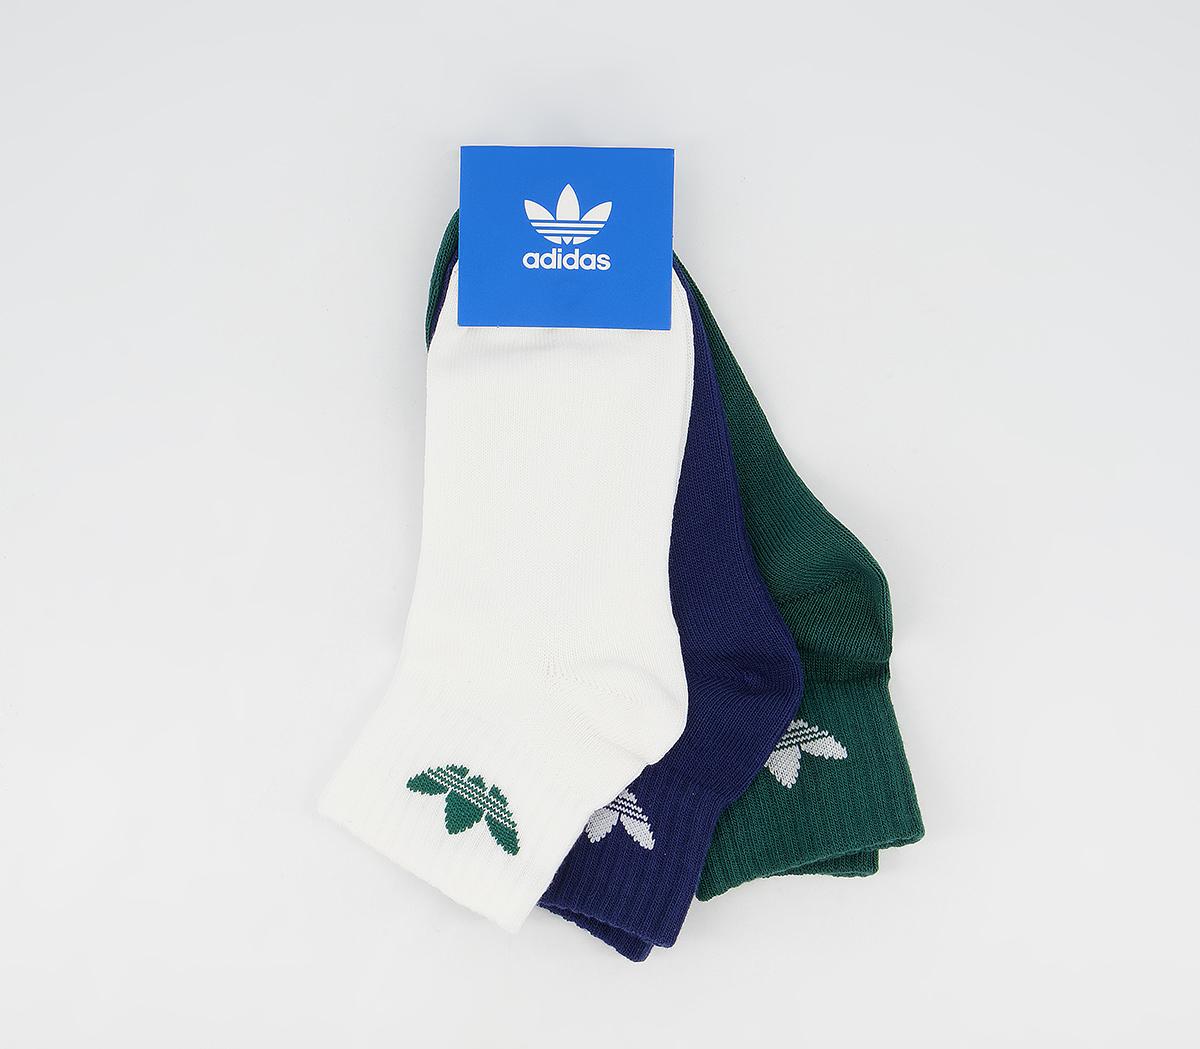 adidasKids Ankle Socks 3 PackWhite Green Blue